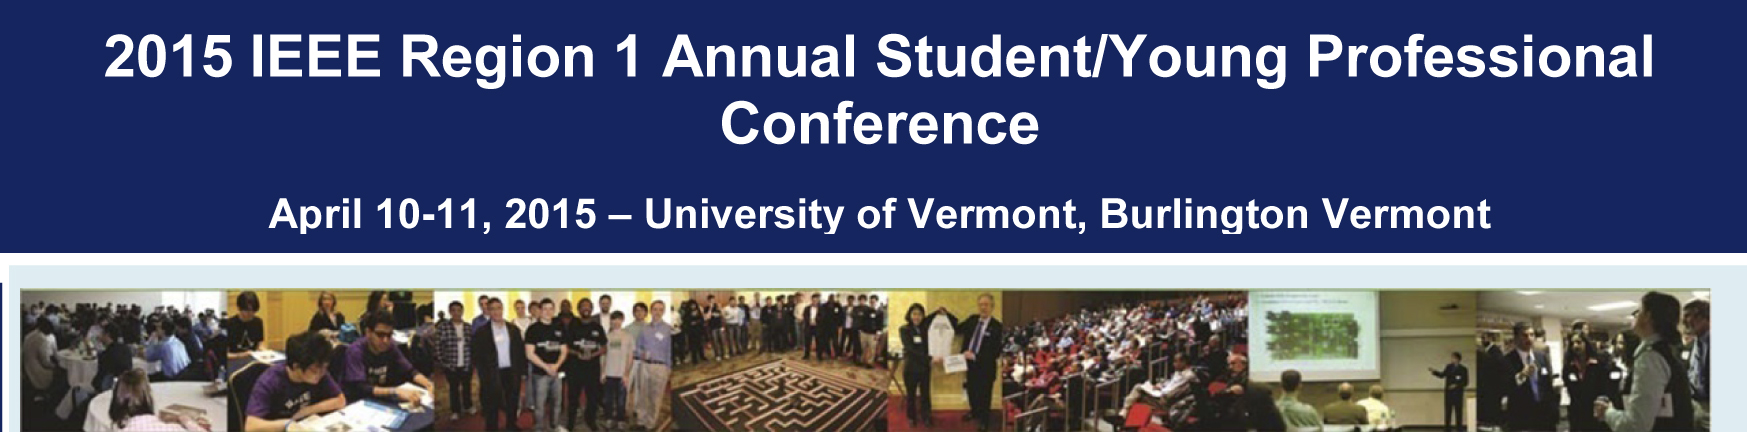 356890-2015-R1-Student-Conference-Flyer-v4